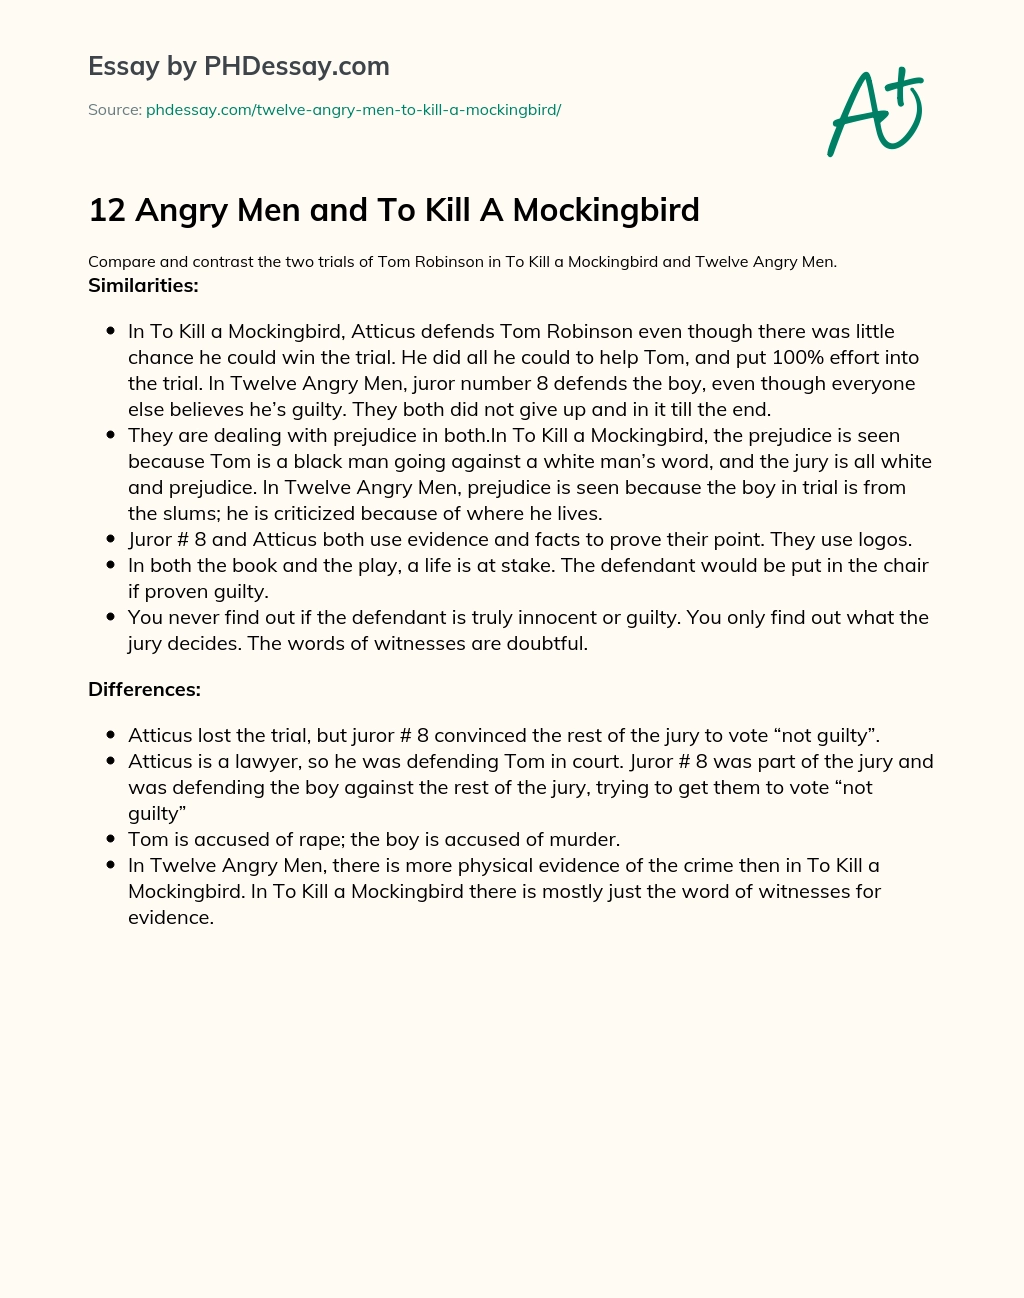 12 Angry Men and To Kill A Mockingbird essay